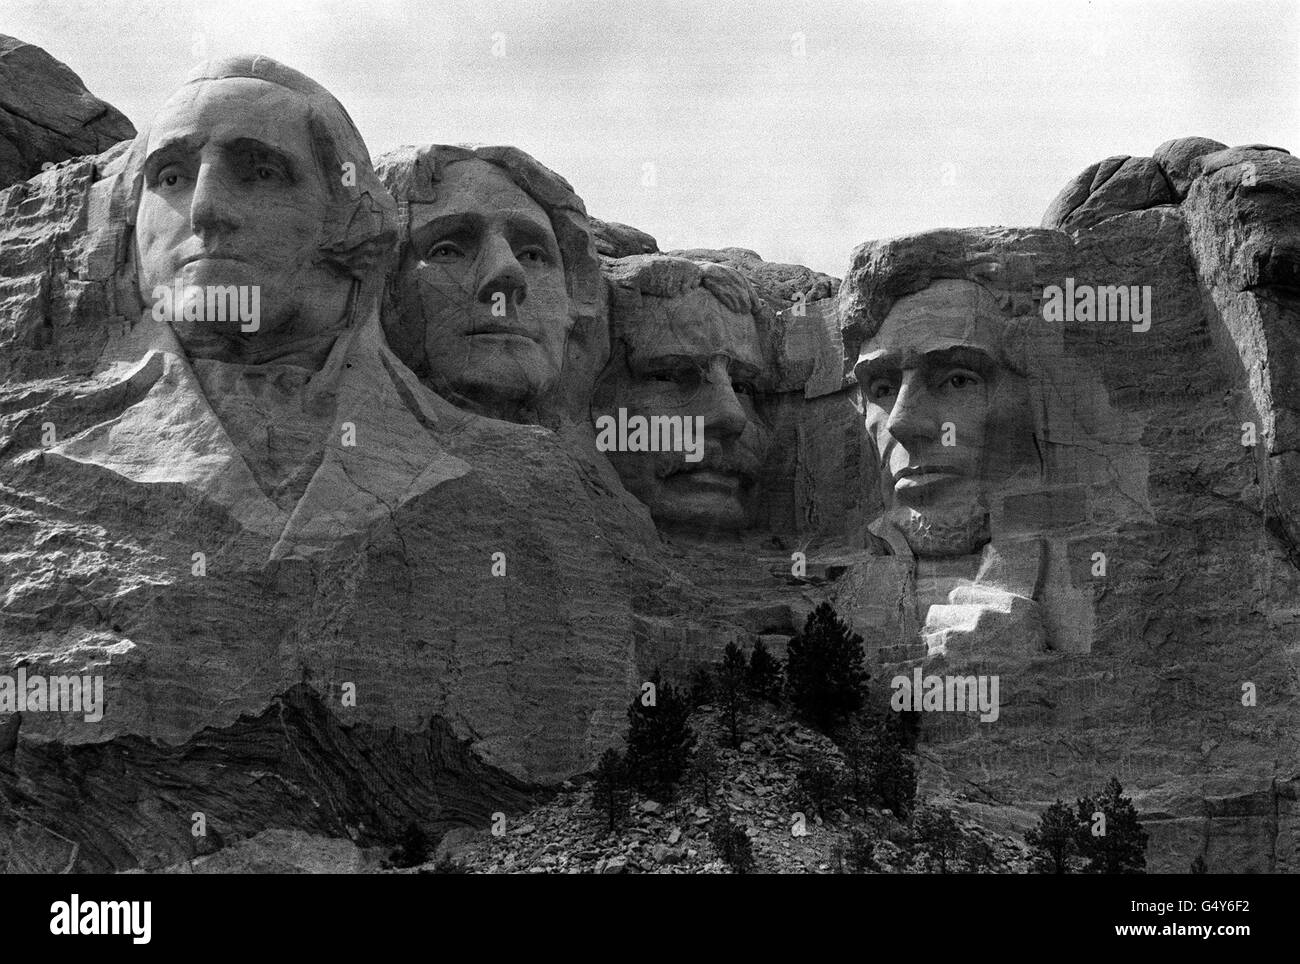 Mount Rushmore, Amerikas Schrein der Demokratie in Bergskulptur in den Black Hills von South Dakota 'geschrieben'. Die Rockköpfe von vier ehemaligen Präsidenten - Washington, Jefferson, Roosevelt und Lincoln sind ein nationales Denkmal der amerikanischen Geschichte. * Sie sind ein herausragendes Zeugnis der Arbeit des Bildhauers Gutzon Borglum, der das Kolosseum-Projekt im Jahr 1927 begann. Jeder Kopf ist 60ft hoch und skaliert, um Männer 465 ft groß, wenn vollständig geschnitzt. Jede Nase ist 20ft lang, die Augen 11ft breit und Lincolns Maulwurf ist 15 Zoll breit. Stockfoto